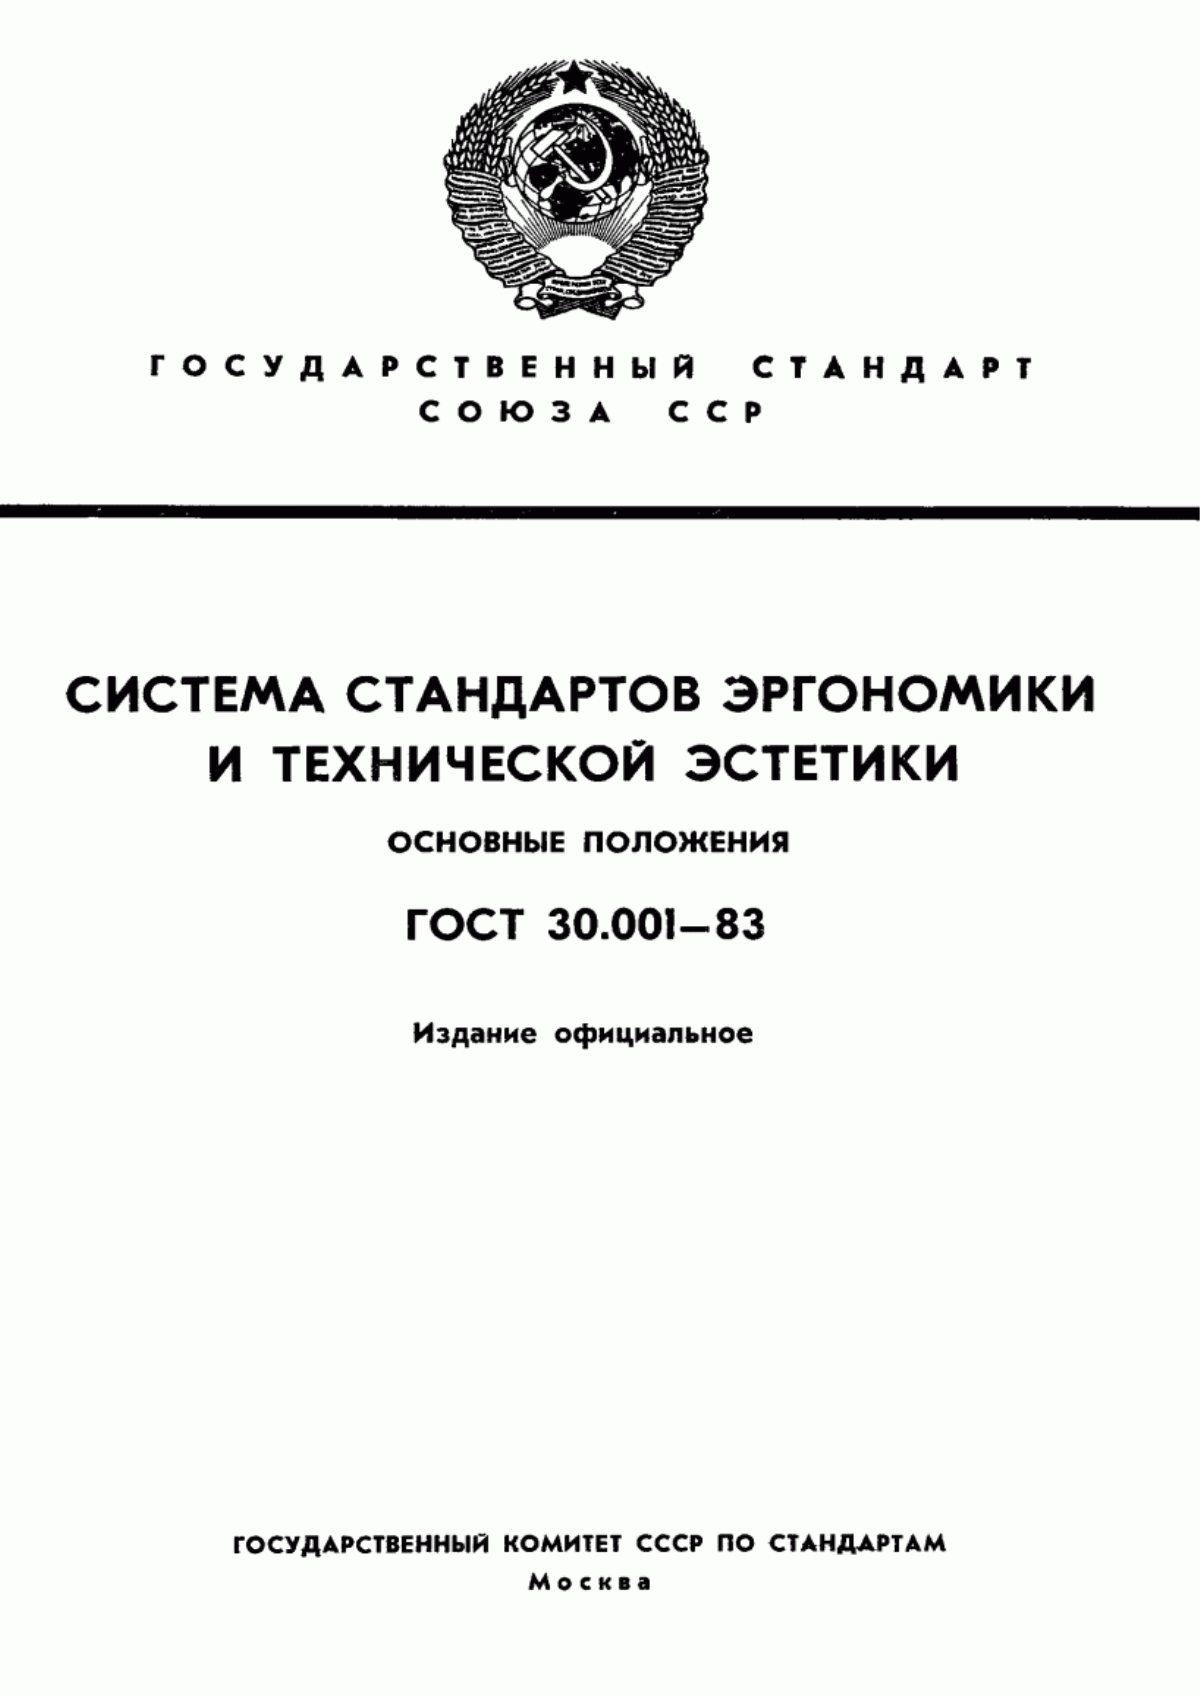 ГОСТ 30.001-83 Система стандартов эргономики и технической эстетики. Основные положения